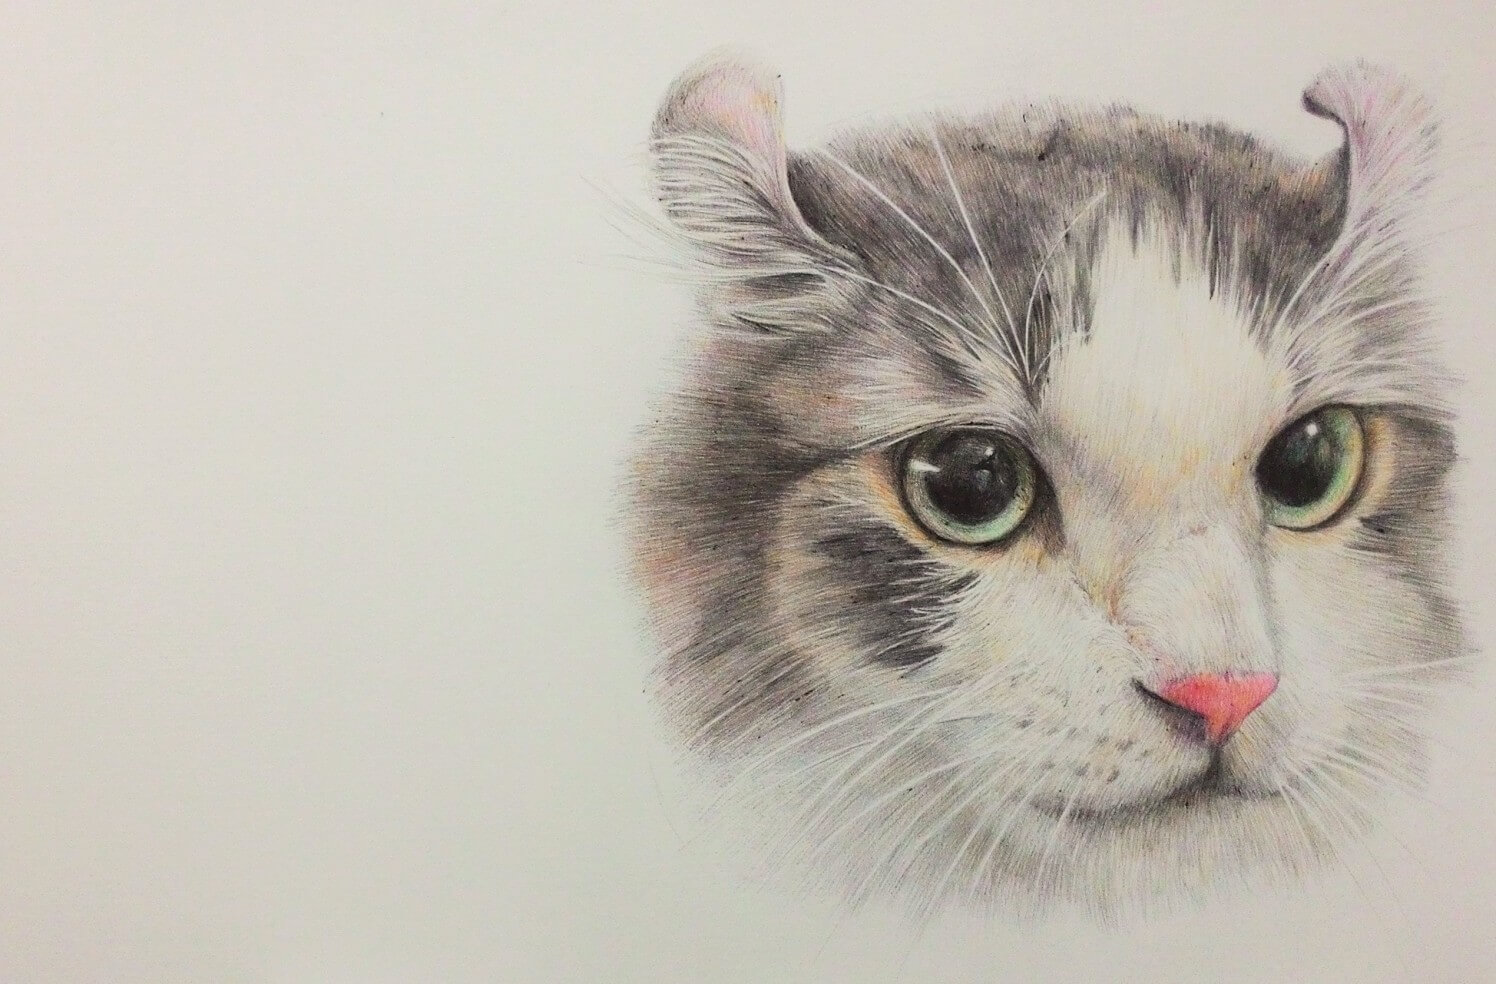 Vẽ bằng bút chì là một công việc rất thú vị và thư giãn. Chỉ cần có chút kiên nhẫn và tình yêu với nghệ thuật, bạn có thể sở hữu những hình vẽ mèo đẹp và tuyệt vời như những gì bạn ước mơ. Hãy cùng xem bức tranh đáng yêu này được tạo ra như thế nào nhé!